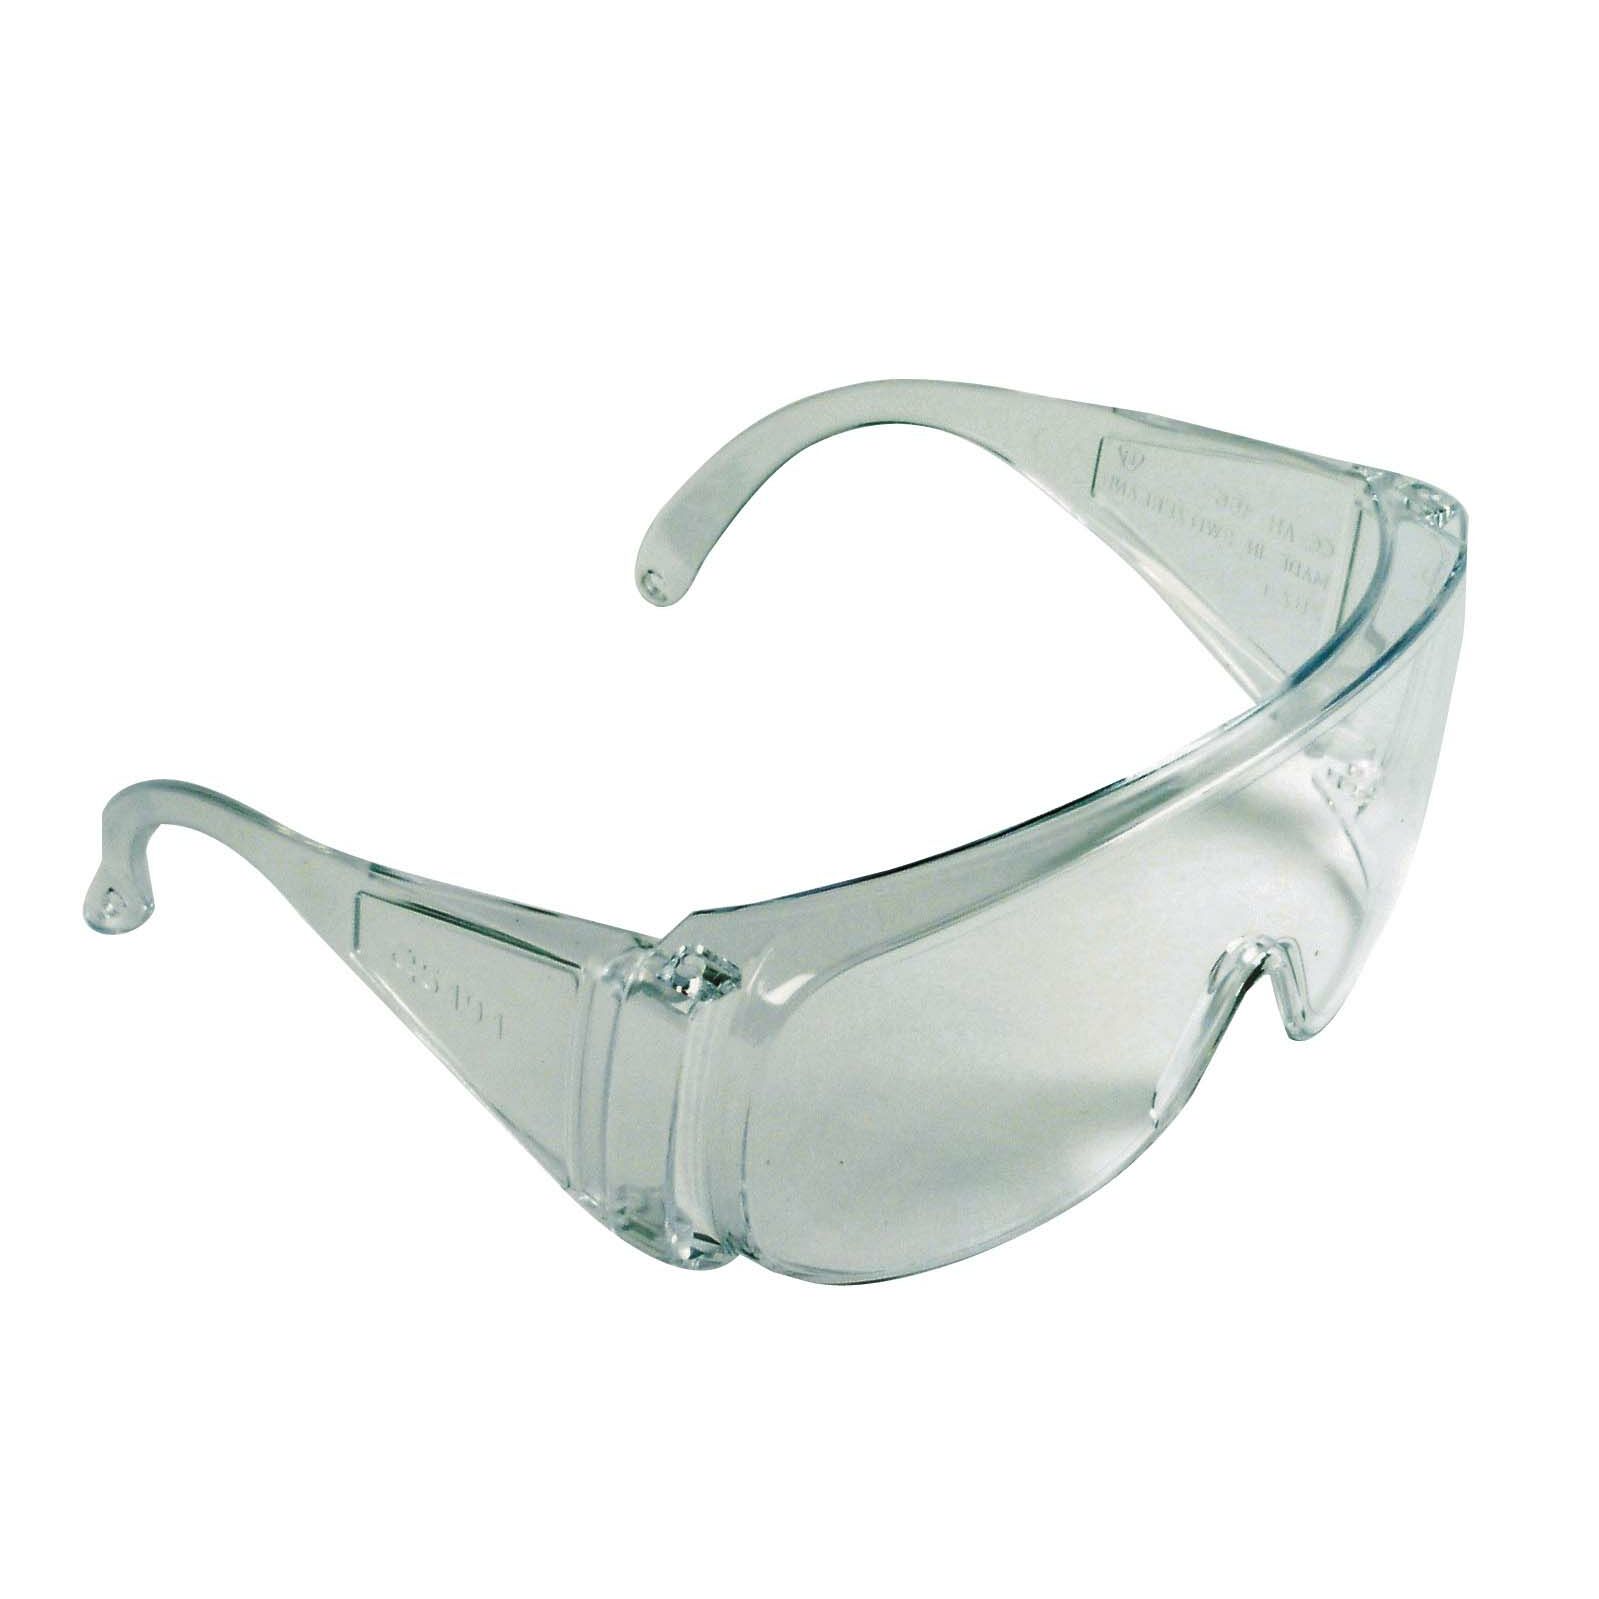 Специальные защитные очки. Очки защитные прозрачные t4p 2803003. Очки защитные биолазер. Очки защитные 304 0-13011. Очки защитные Крафтер.